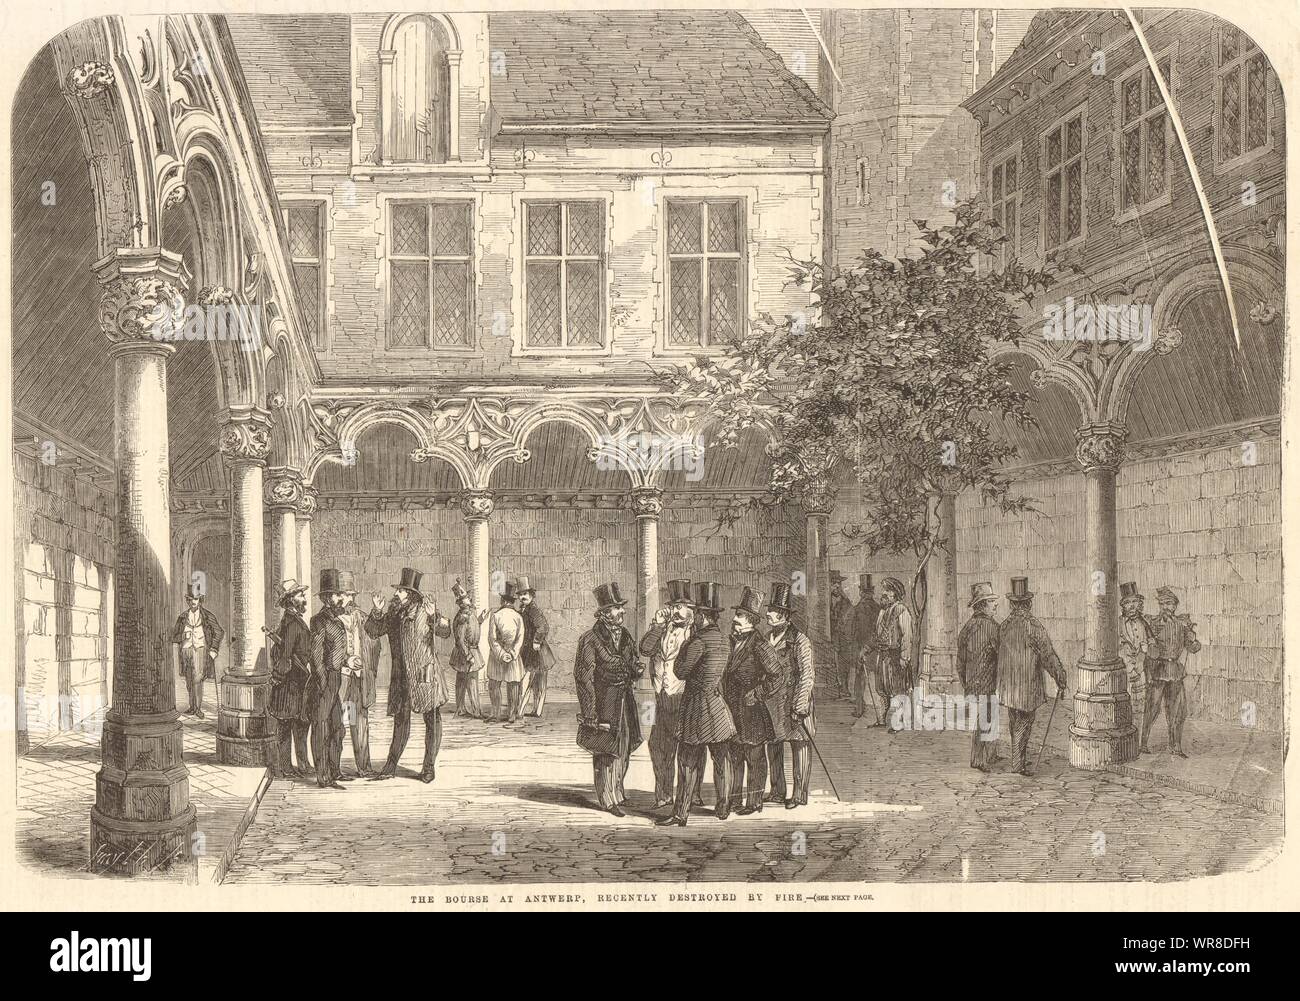 Die Börse in Antwerpen, die vor kurzem durch Feuer zerstört. Belgien. Finanzen 1858 Stockfoto